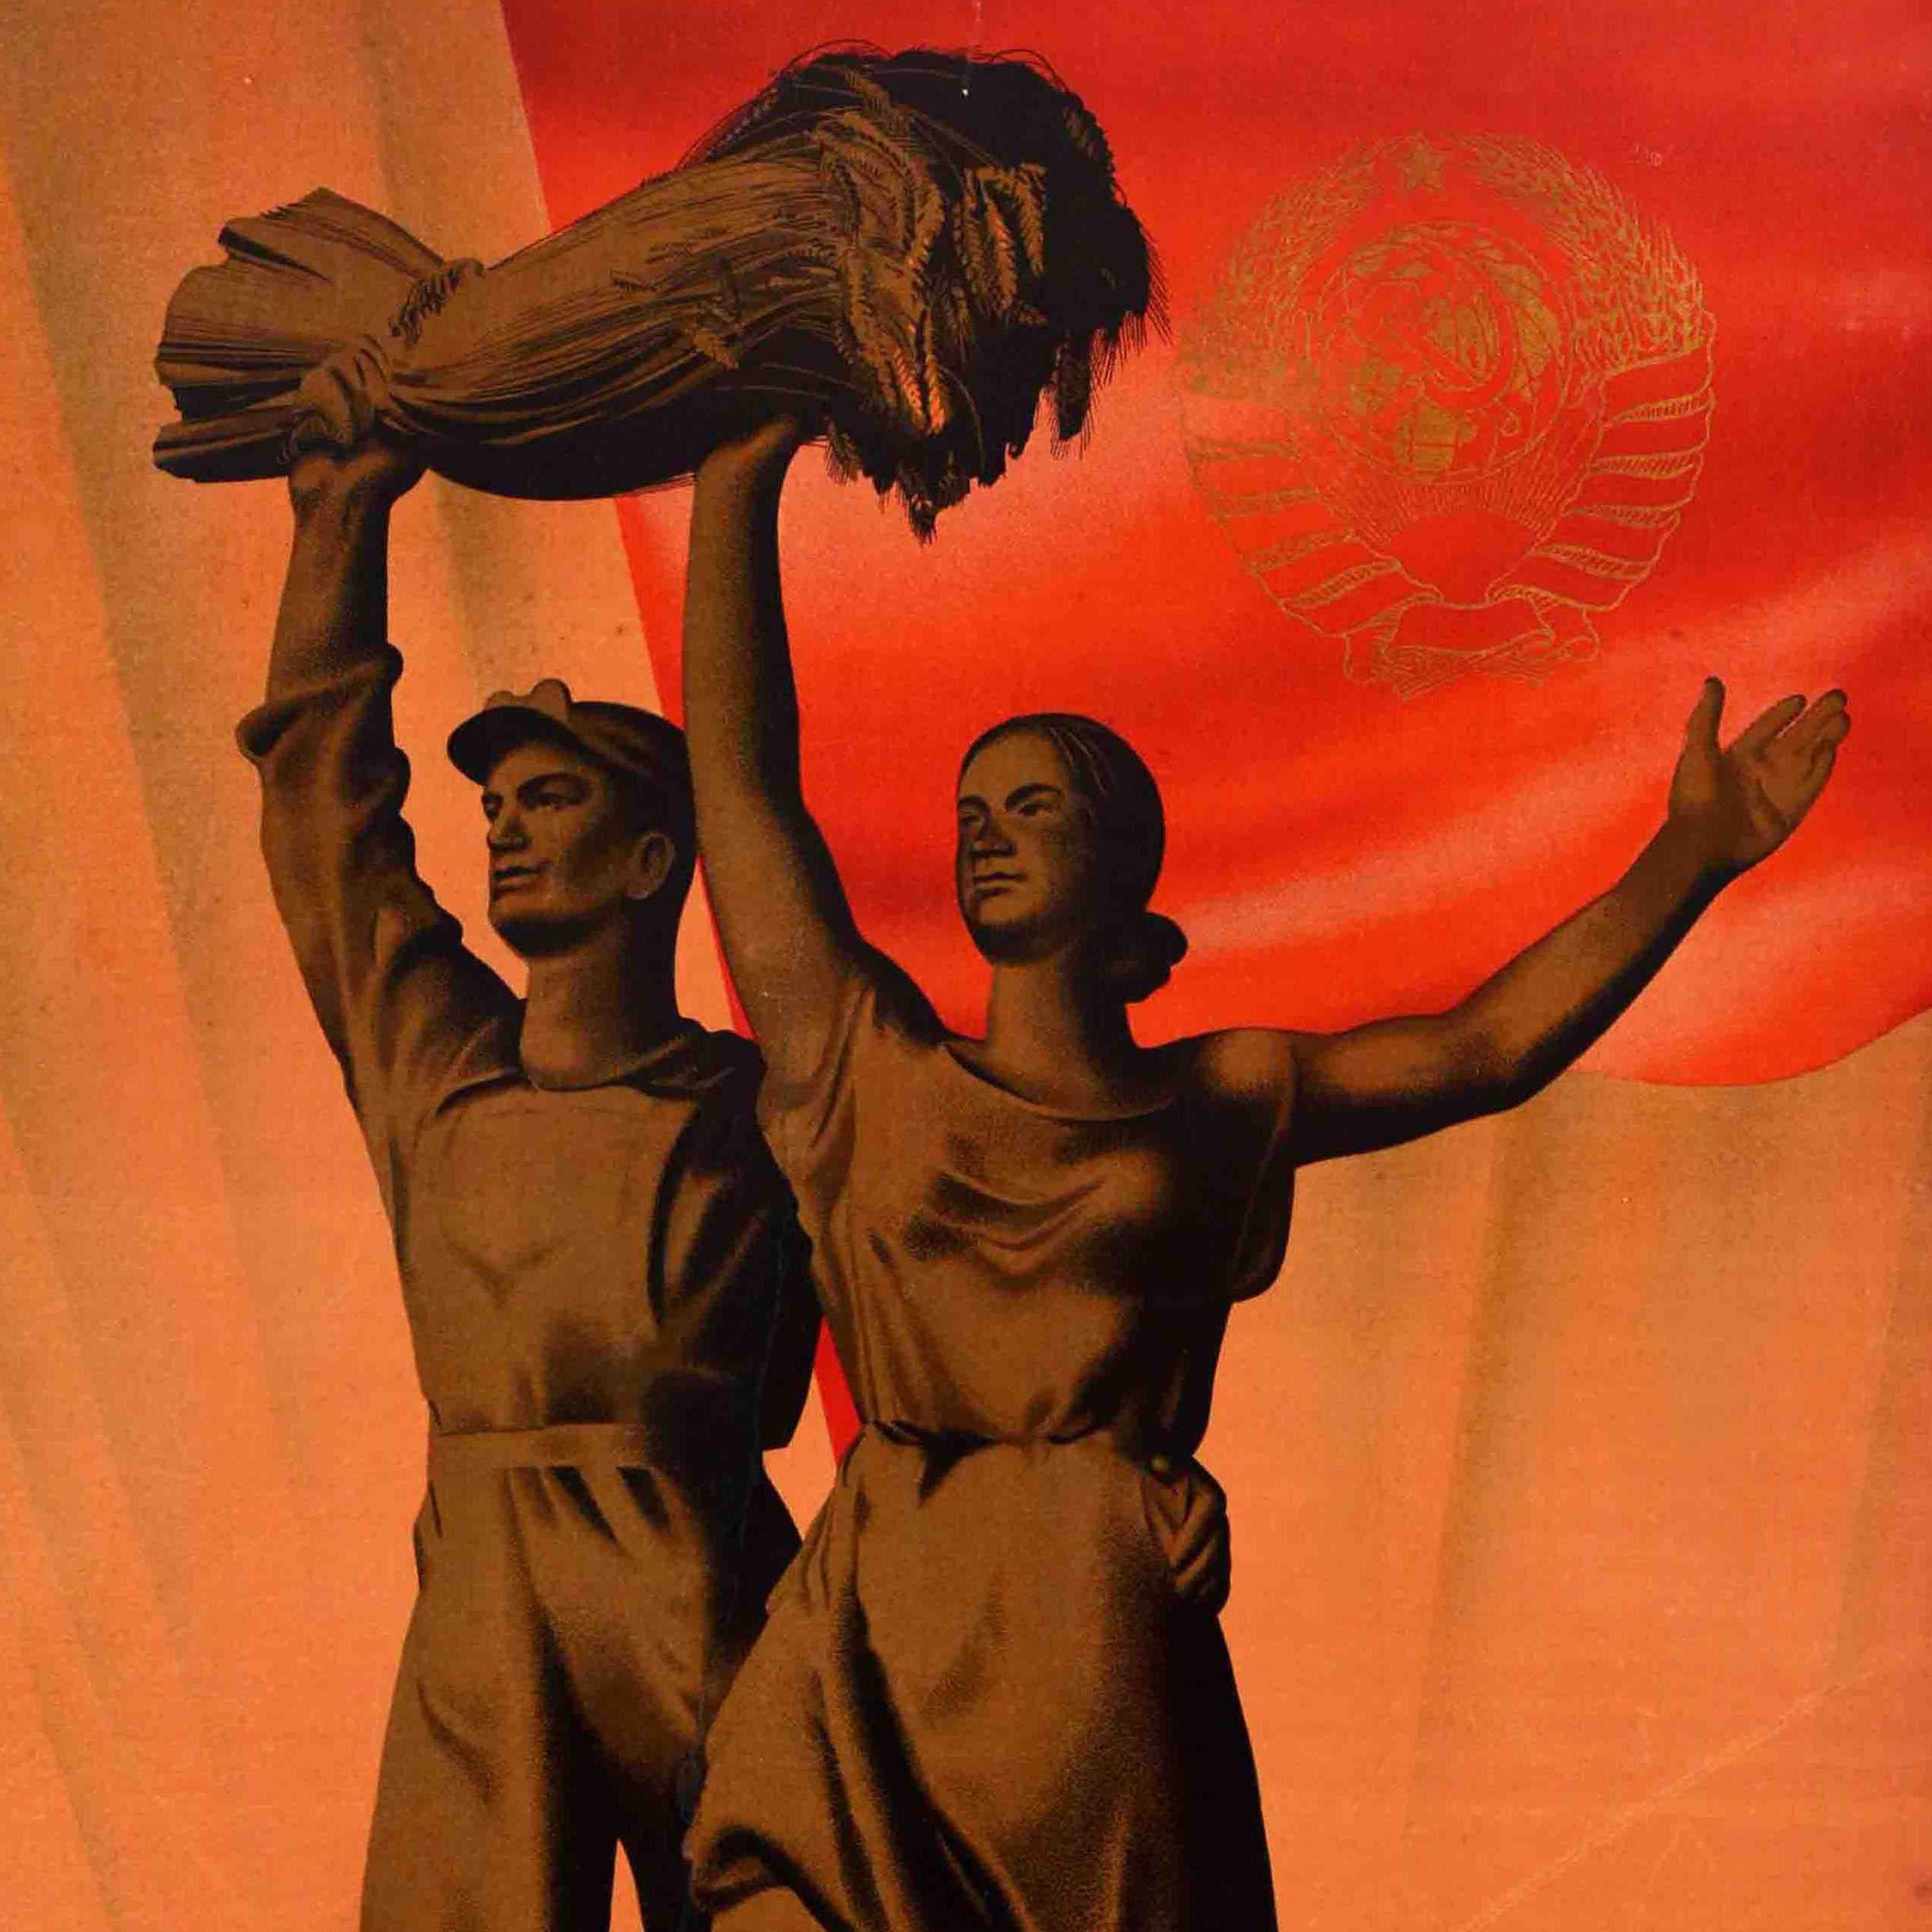 Originales Vintage-Plakat des sowjetischen staatlichen Reisemonopols Intourist aus dem Jahr 1939 zur Eröffnung der Allunions-Landwirtschaftsausstellung (?????????? ???????-????????????? ???????? / Vsesoyuznaya Selsko-Khozyaystvennaya Vystavka),